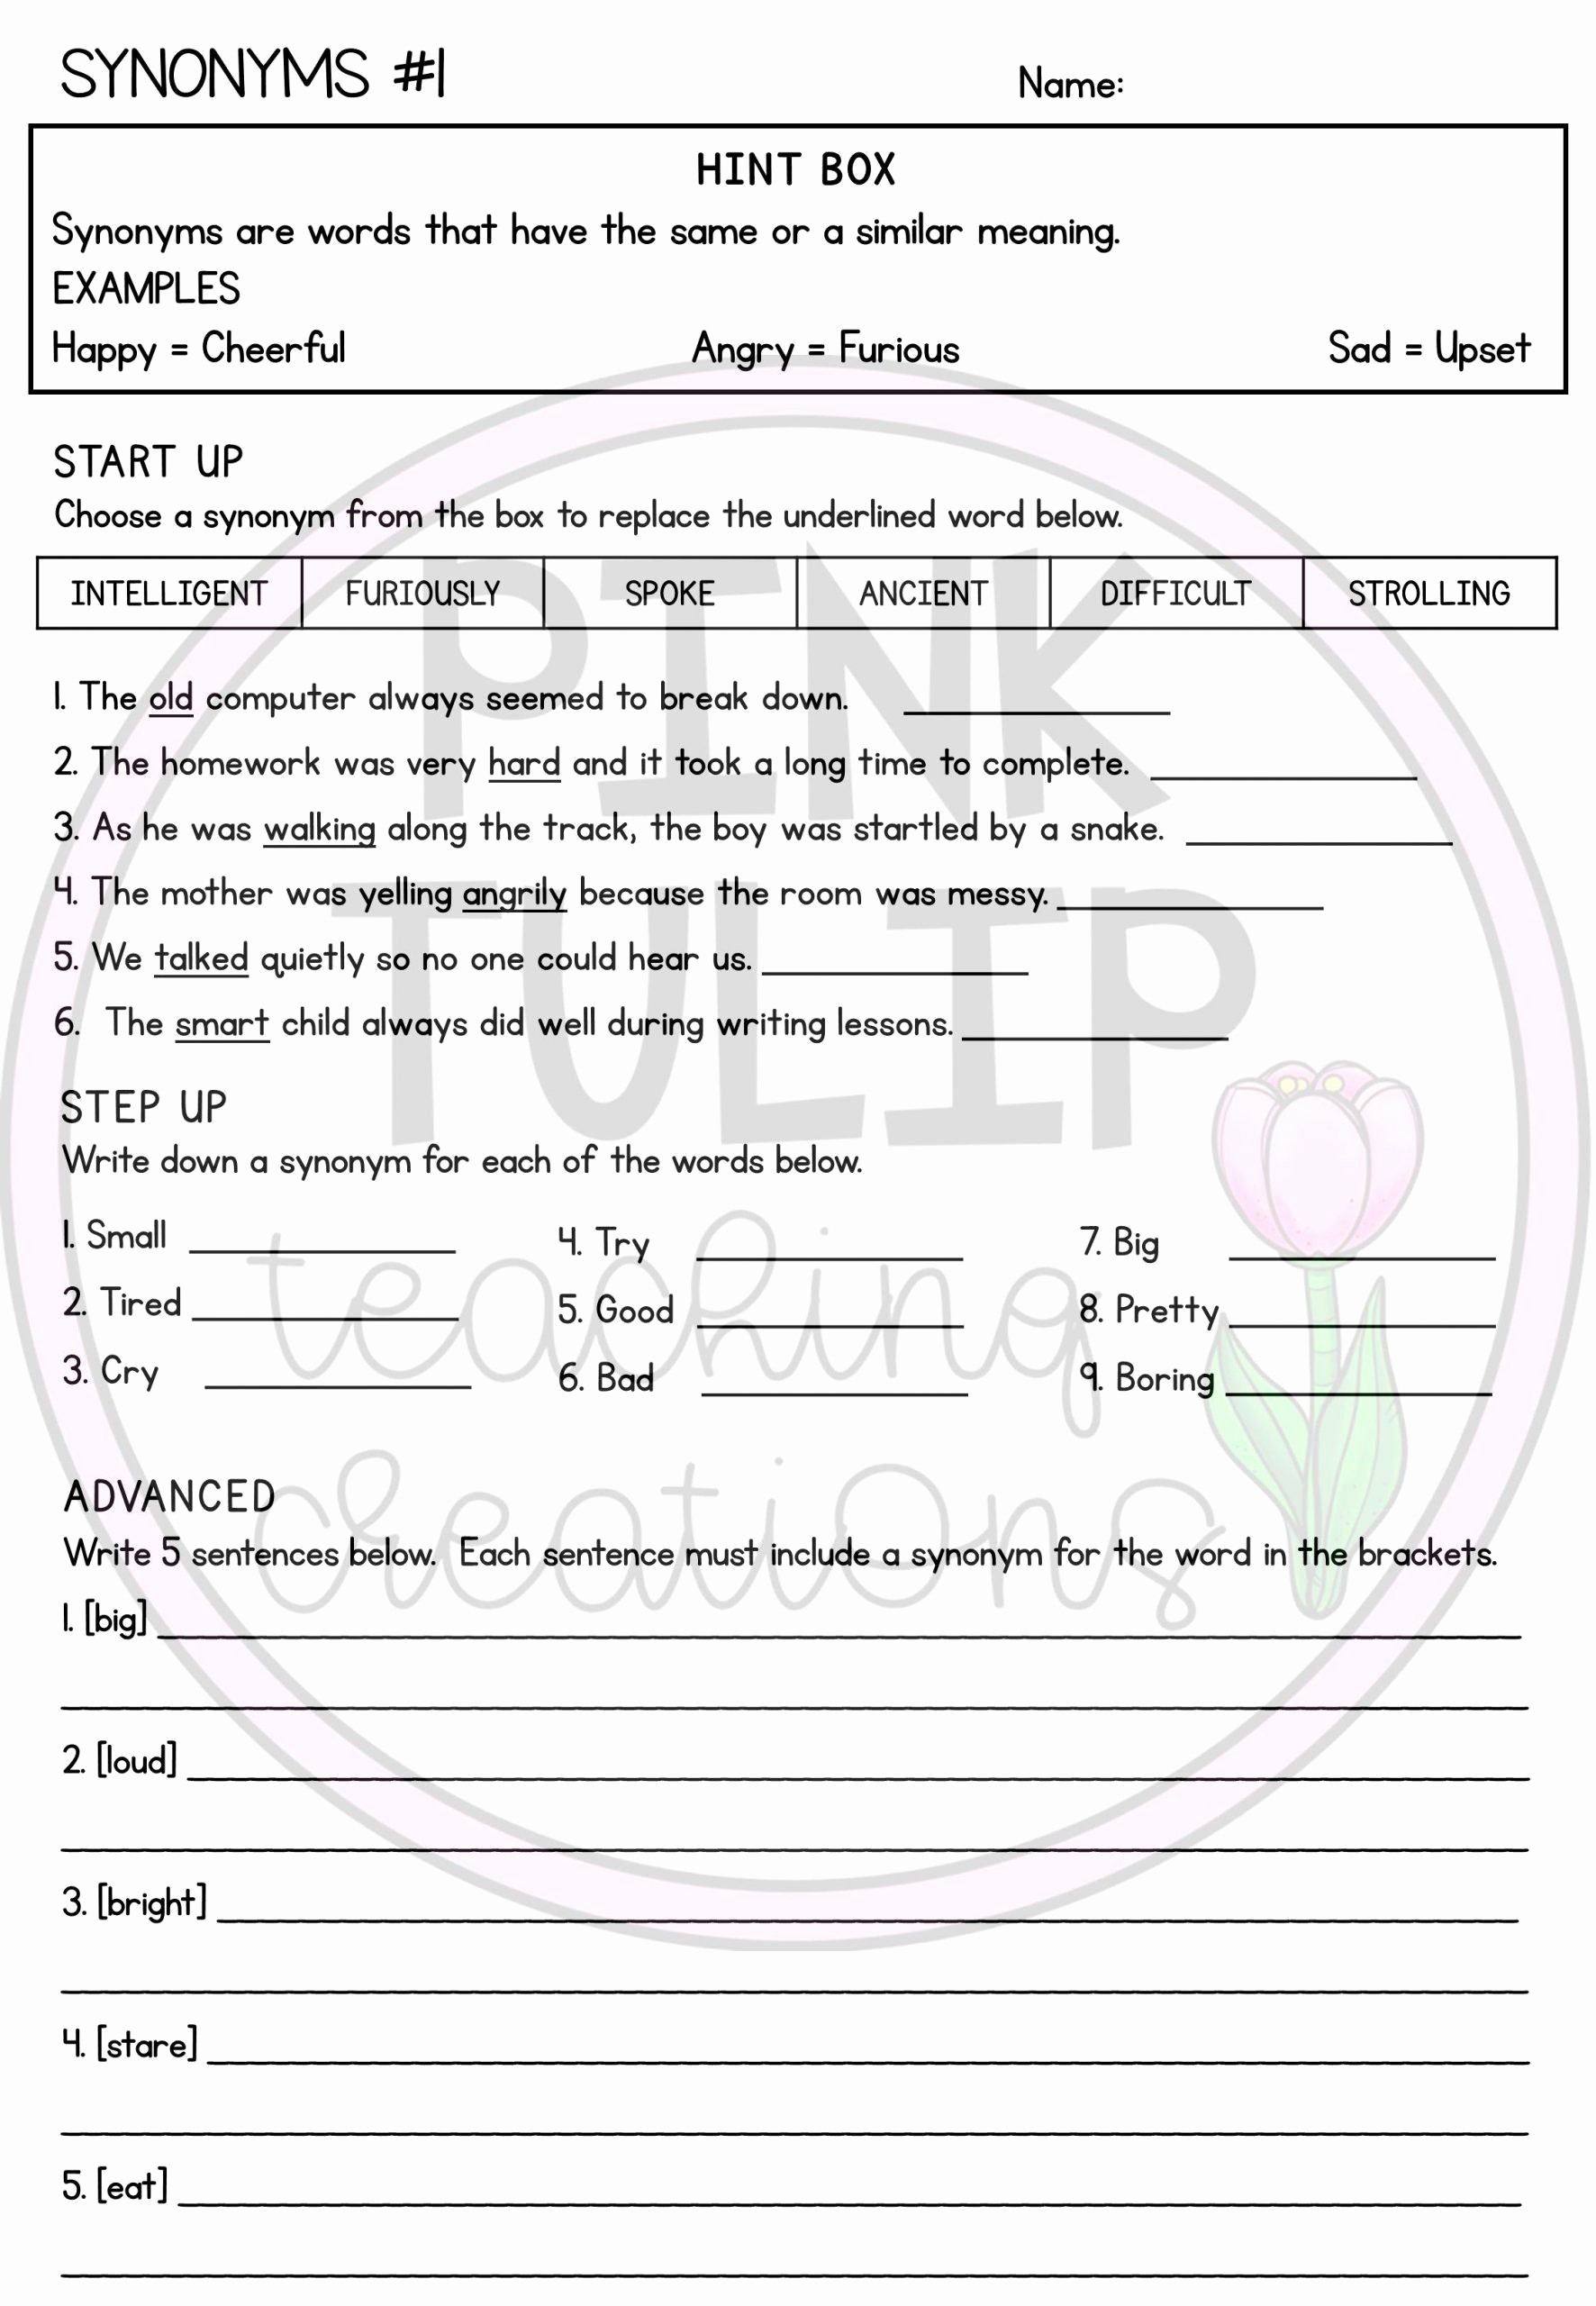 Homographs Worksheet 3rd Grade Awesome Homographs Worksheet 3rd Grade Homographs Worksheets with